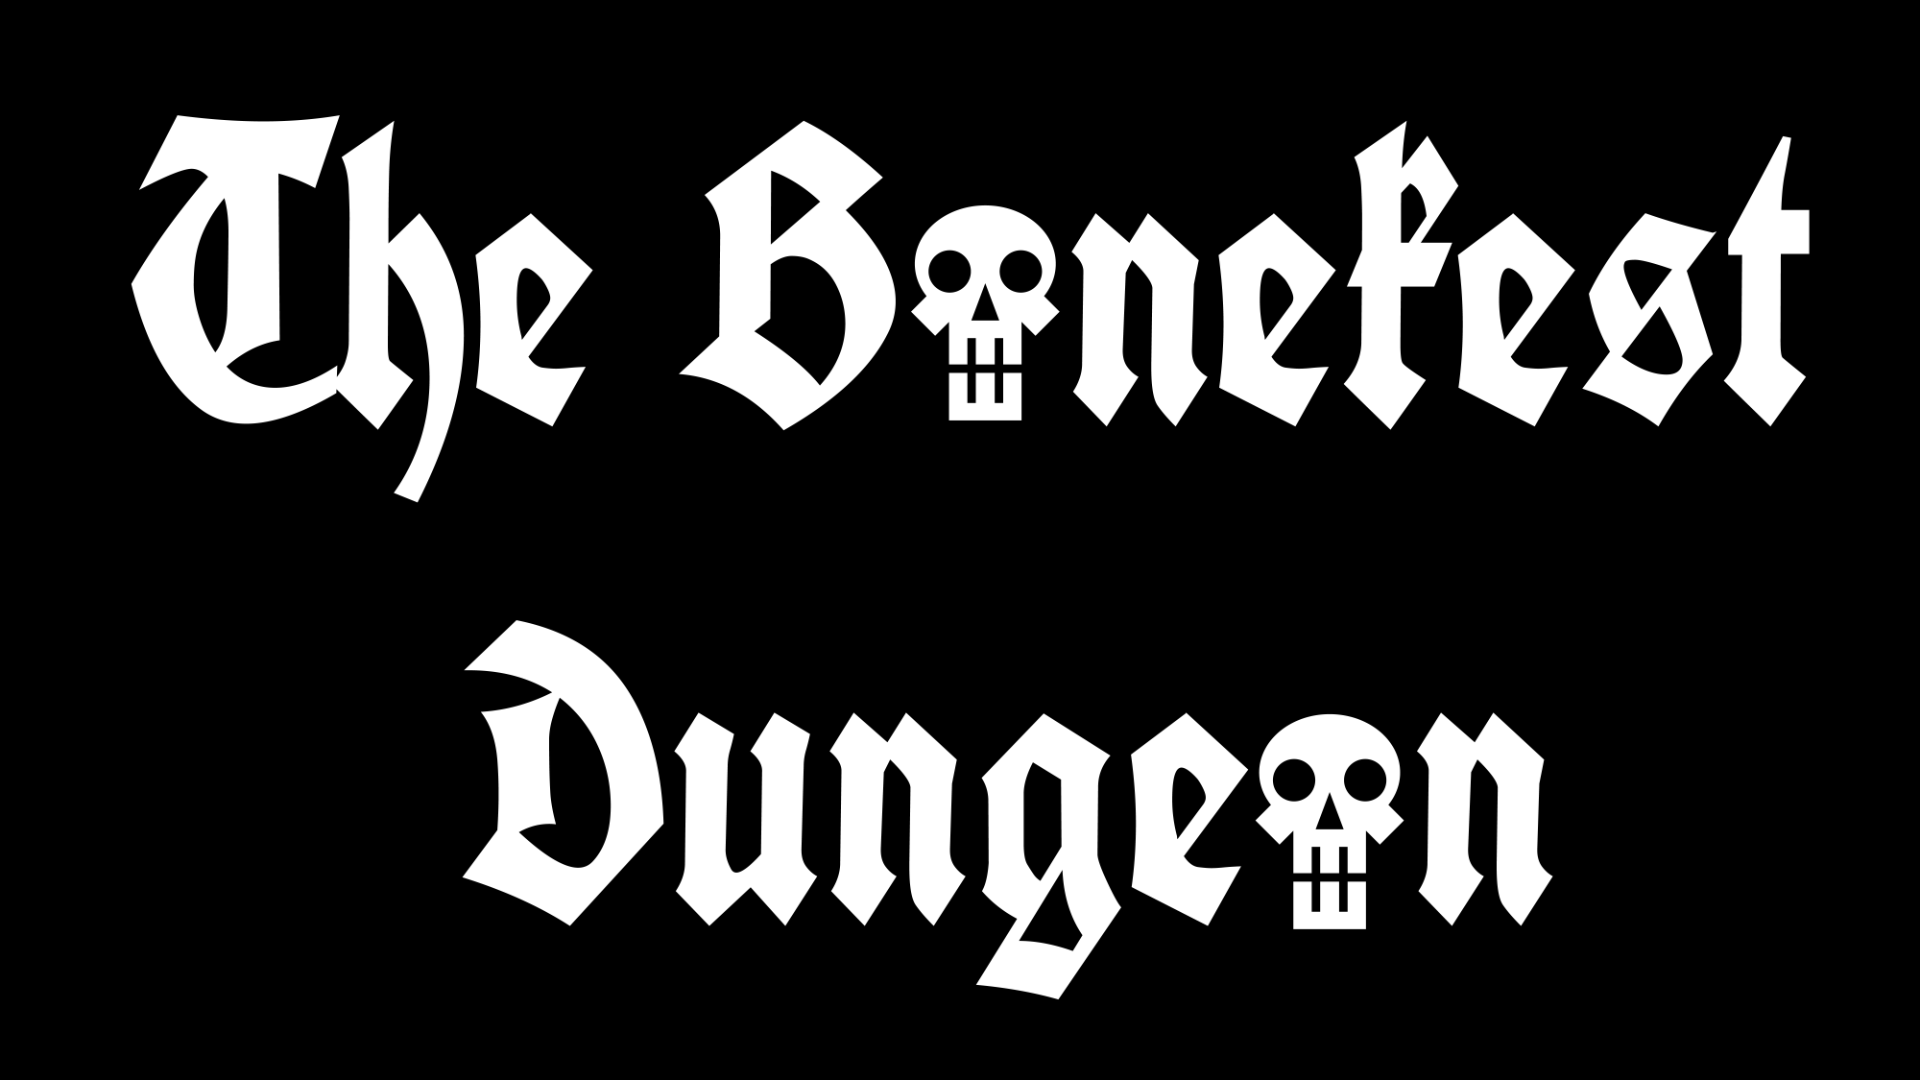 The Bonekest Dungeon